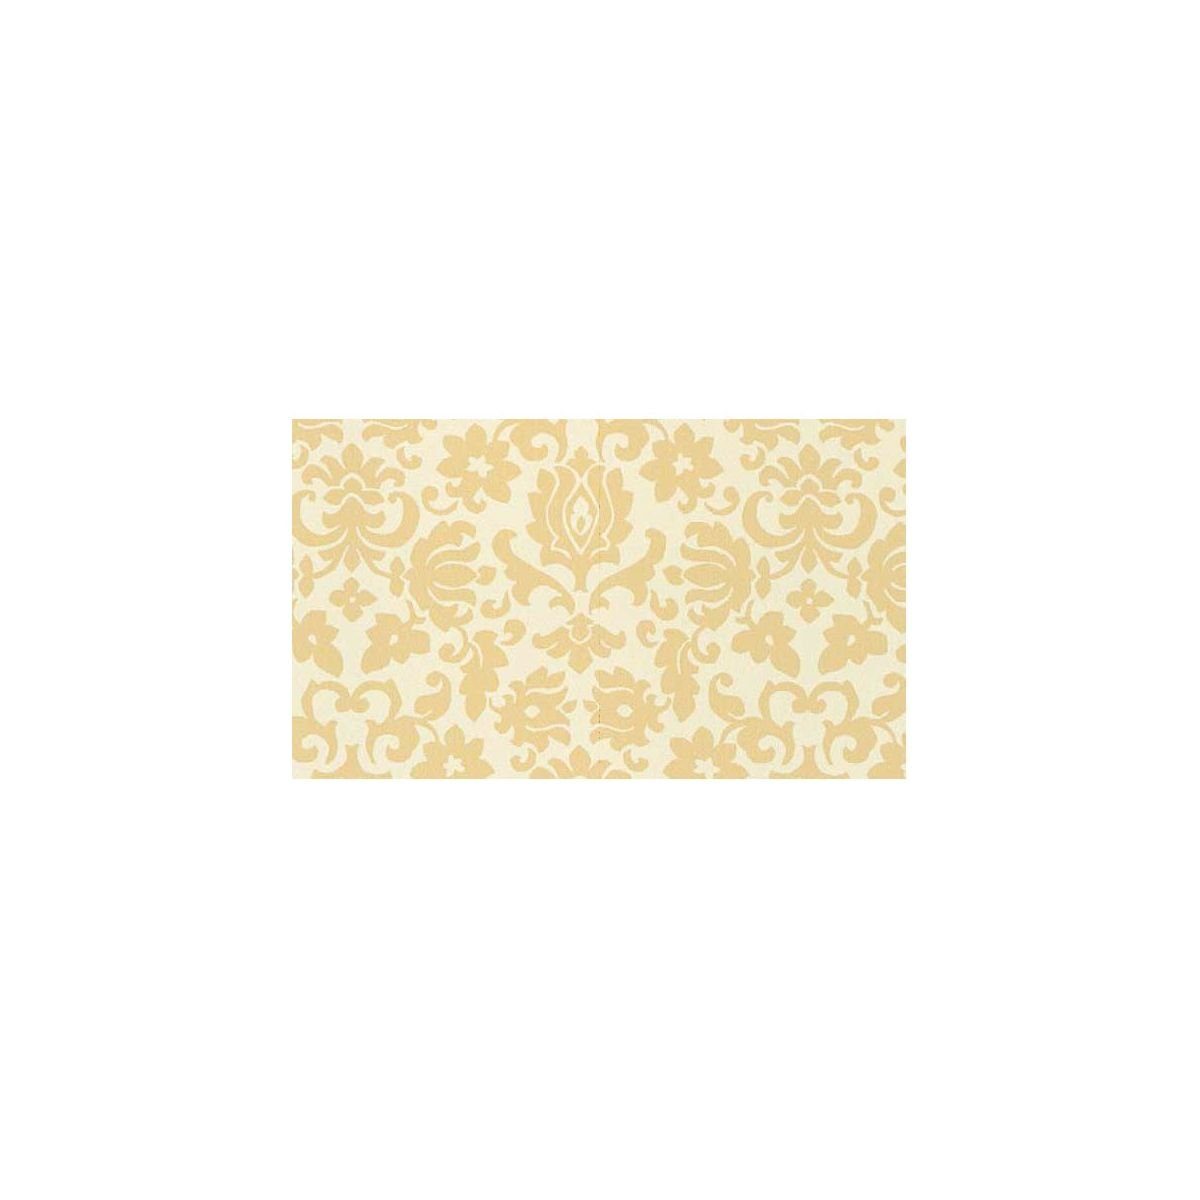 Möbelfolie Dekorfolie Ornamente beige Barock 45 cm x 200 cm Klebefolie 